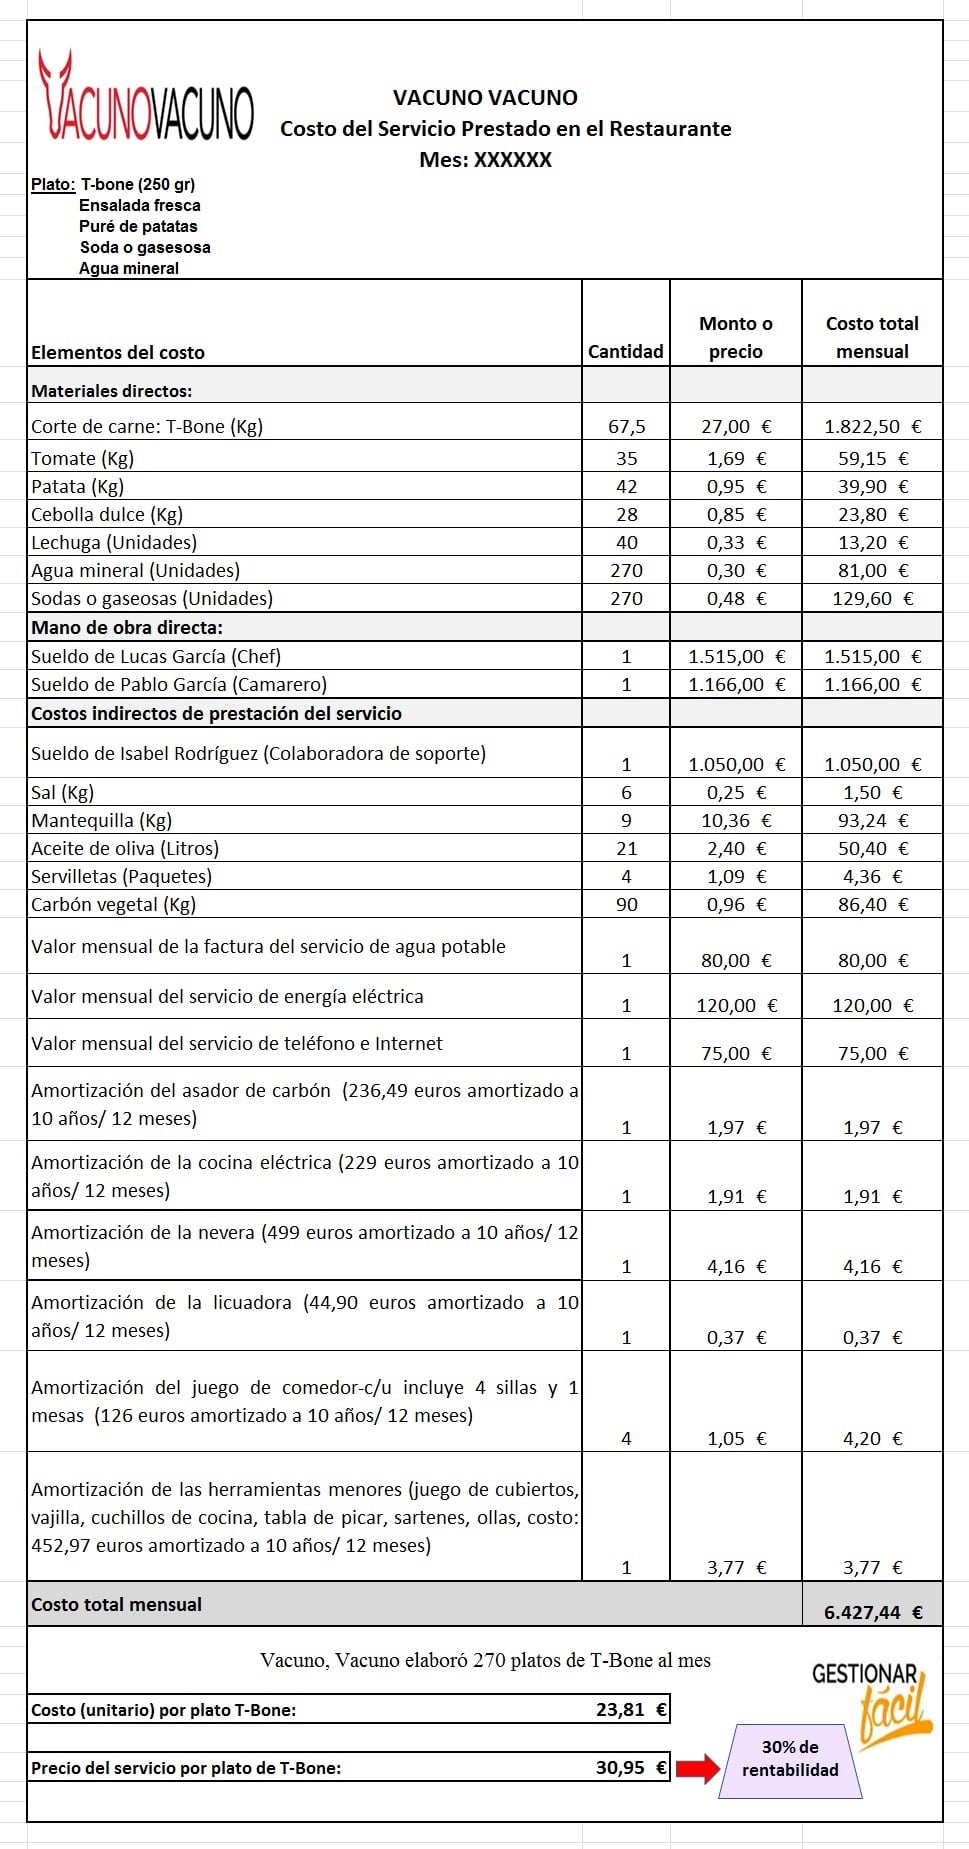 Estructura de costos para el servicio del plato T-Bone.